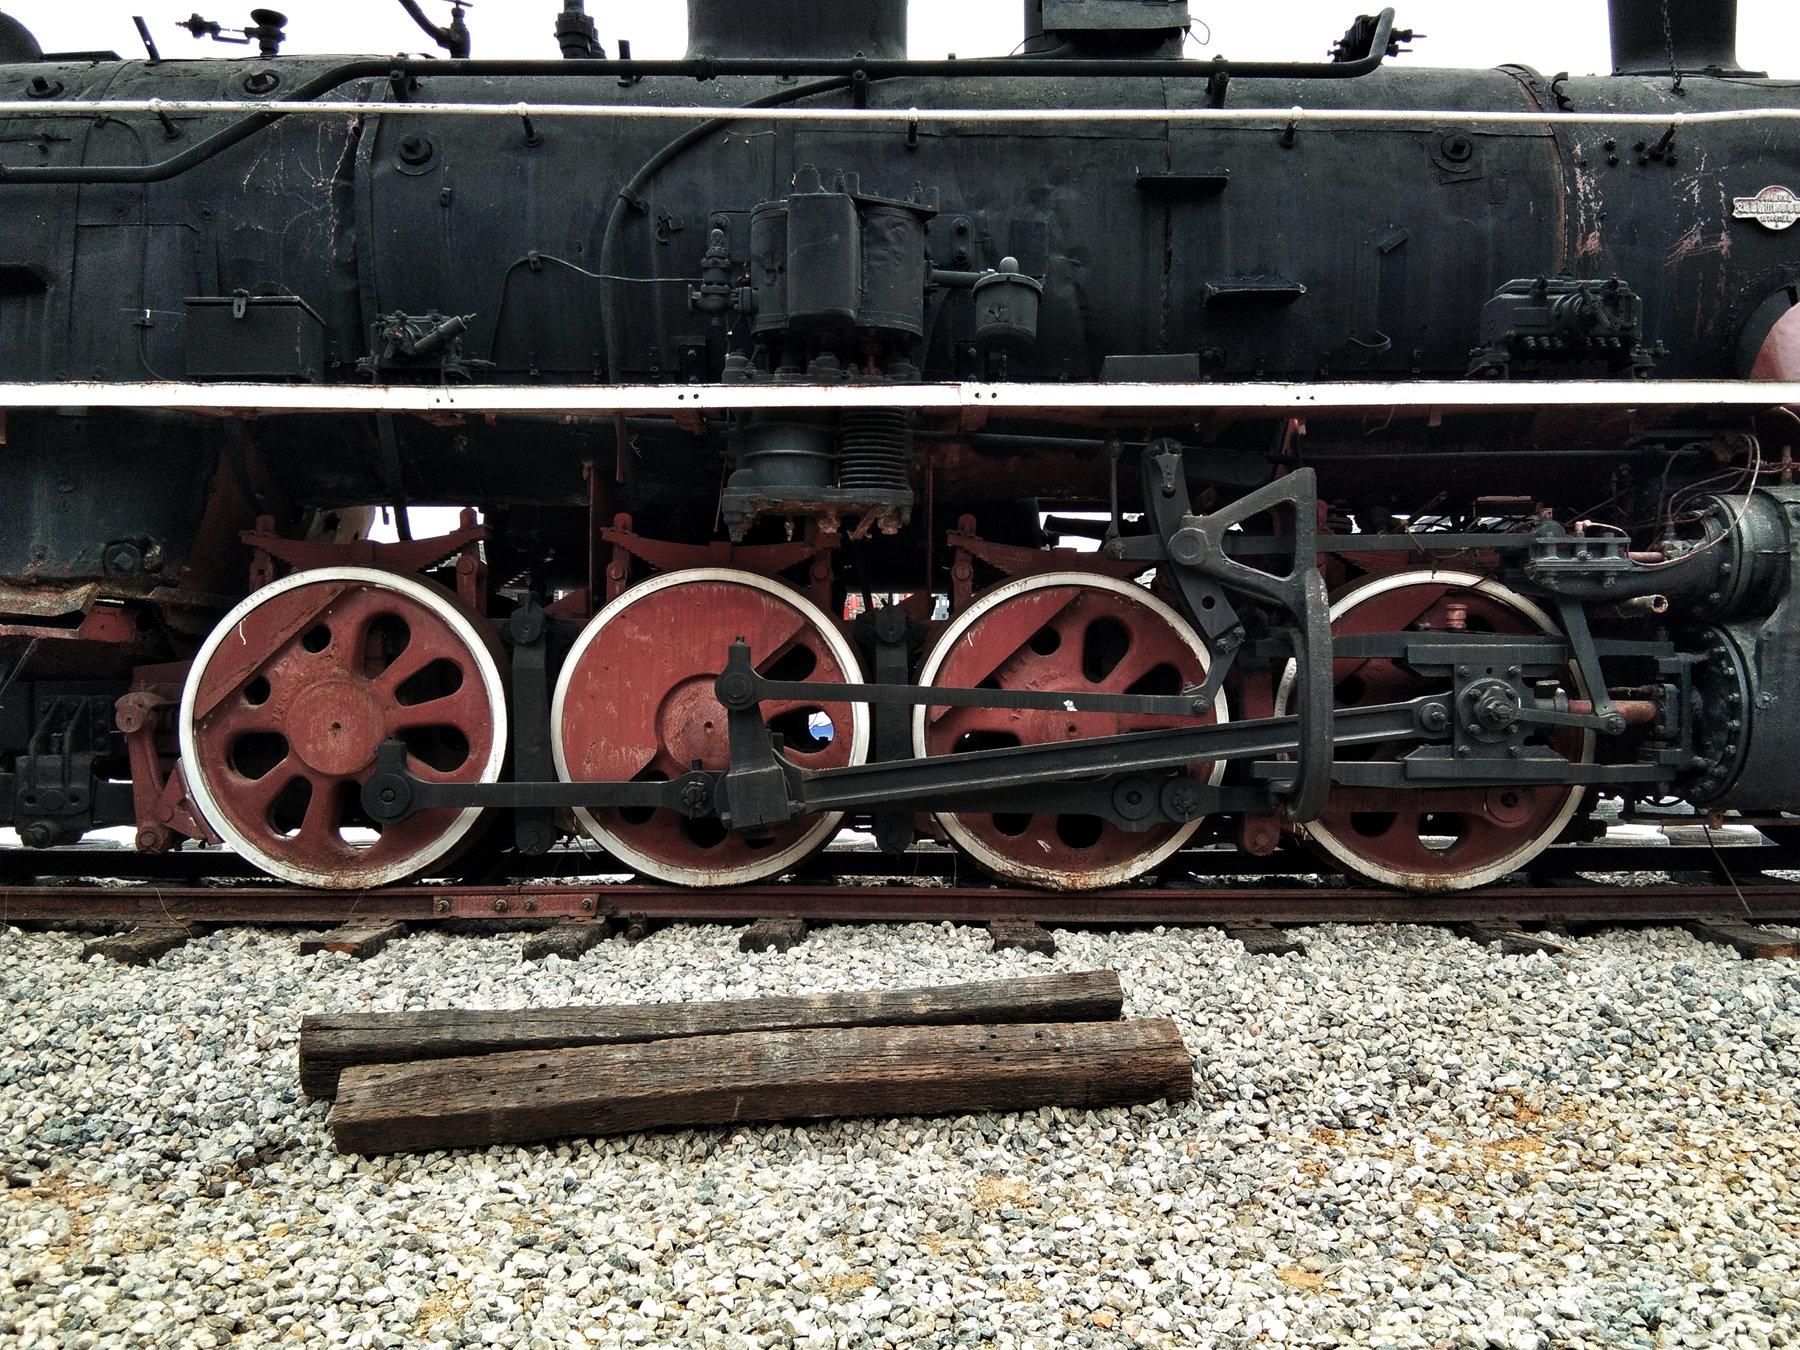 【铁道纪事】零九幺三,尴尬的红旗号,浮躁的蒸汽机车组装和展示!